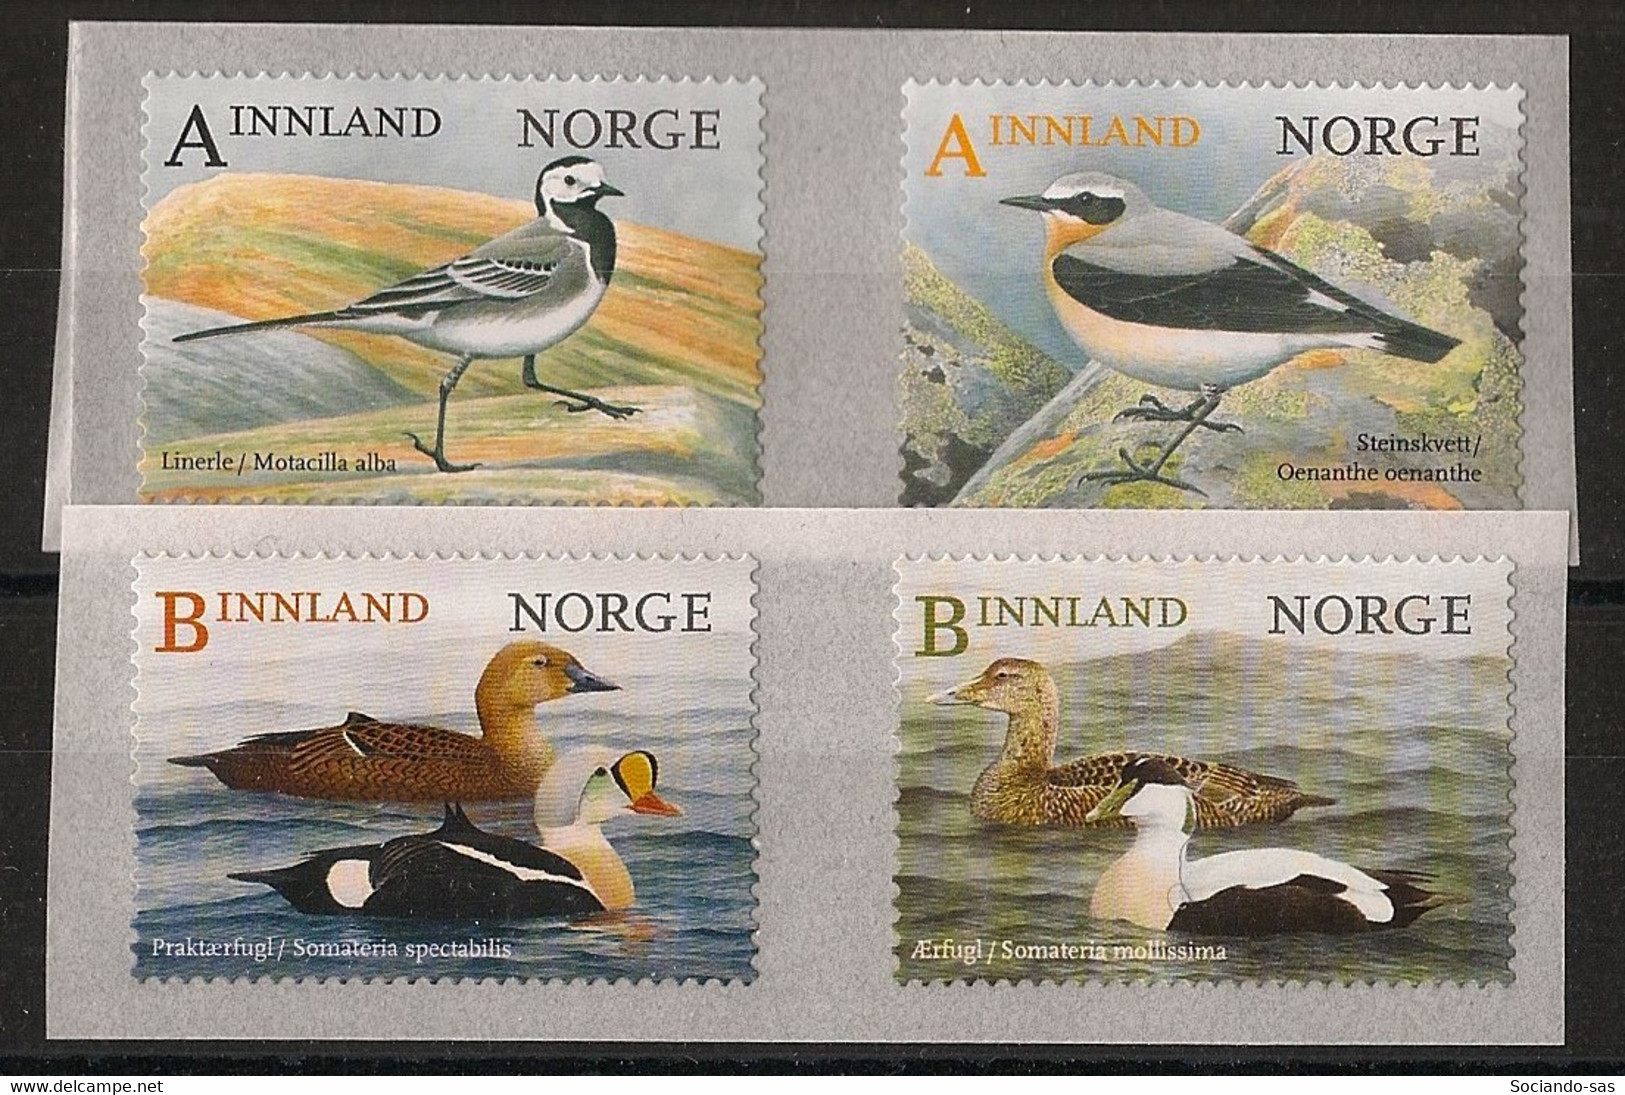 Norway - 2015 - N°Yv. 1833 à 1836 - Oiseaux / Birds - Neuf Luxe ** / MNH / Postfrisch - Ungebraucht